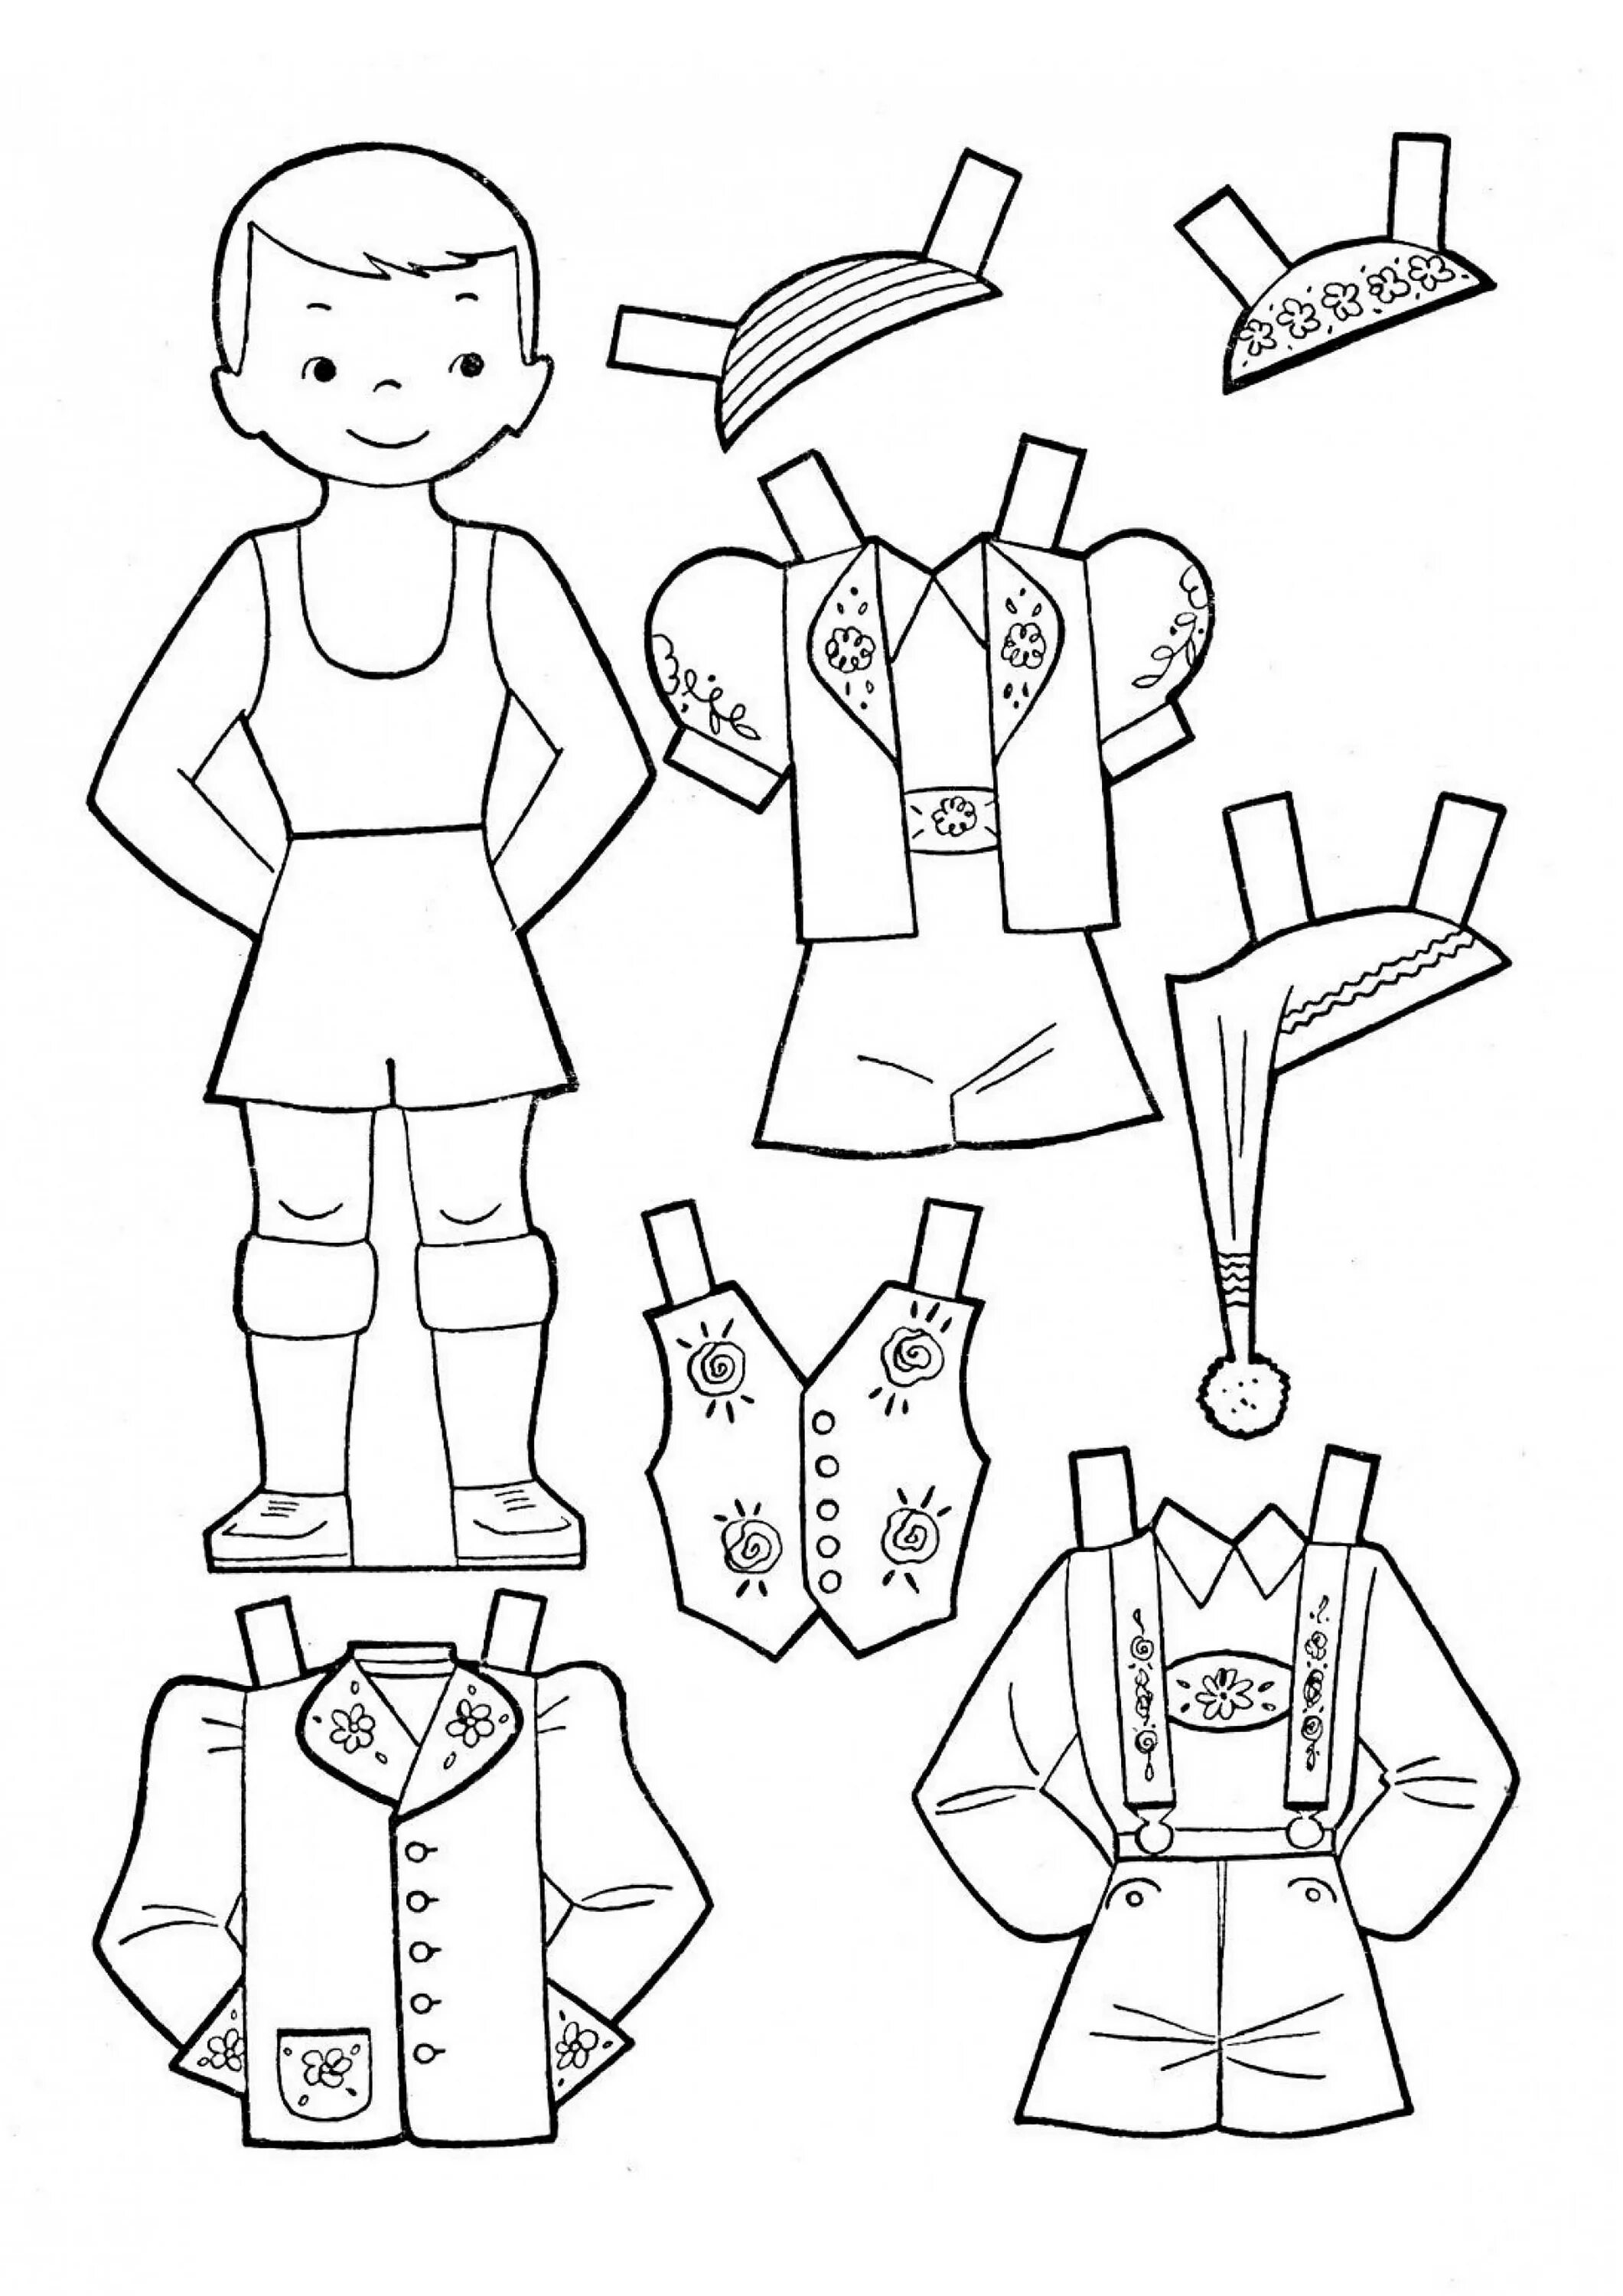 Одежда раскраска для детей. Кукла с одеждой для вырезания. Кукла вырезная мальчик и одежда. Школьная форма для бумажной куклы.